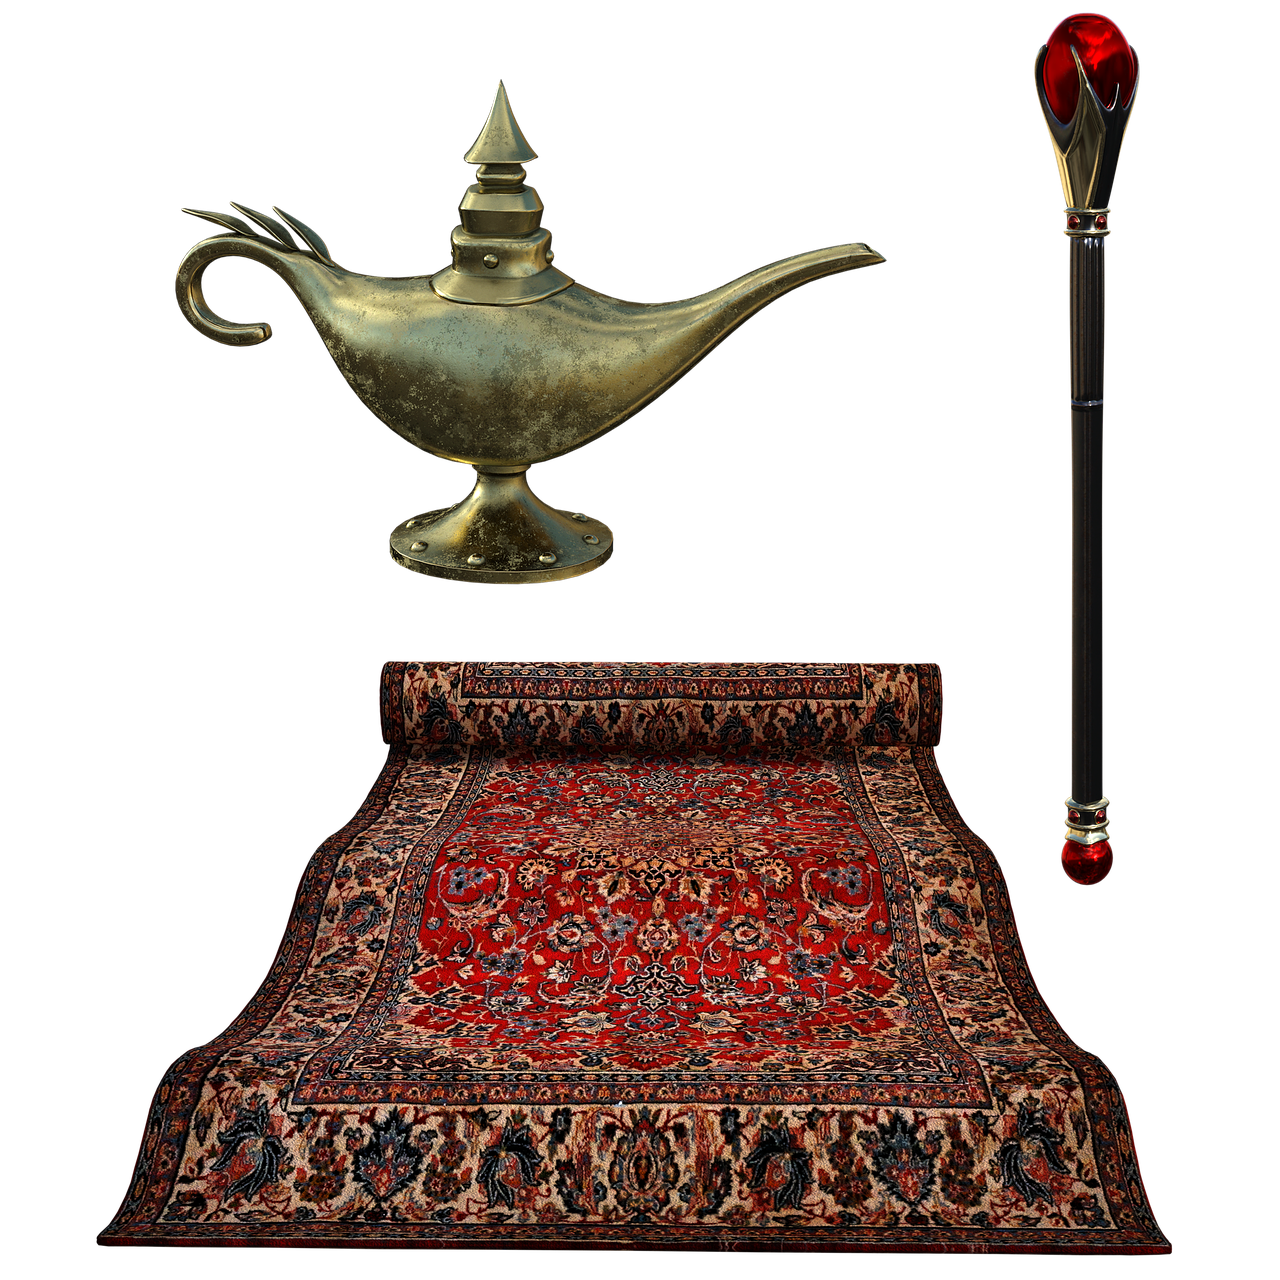 flying carpet, lamp, septure-4010500.jpg